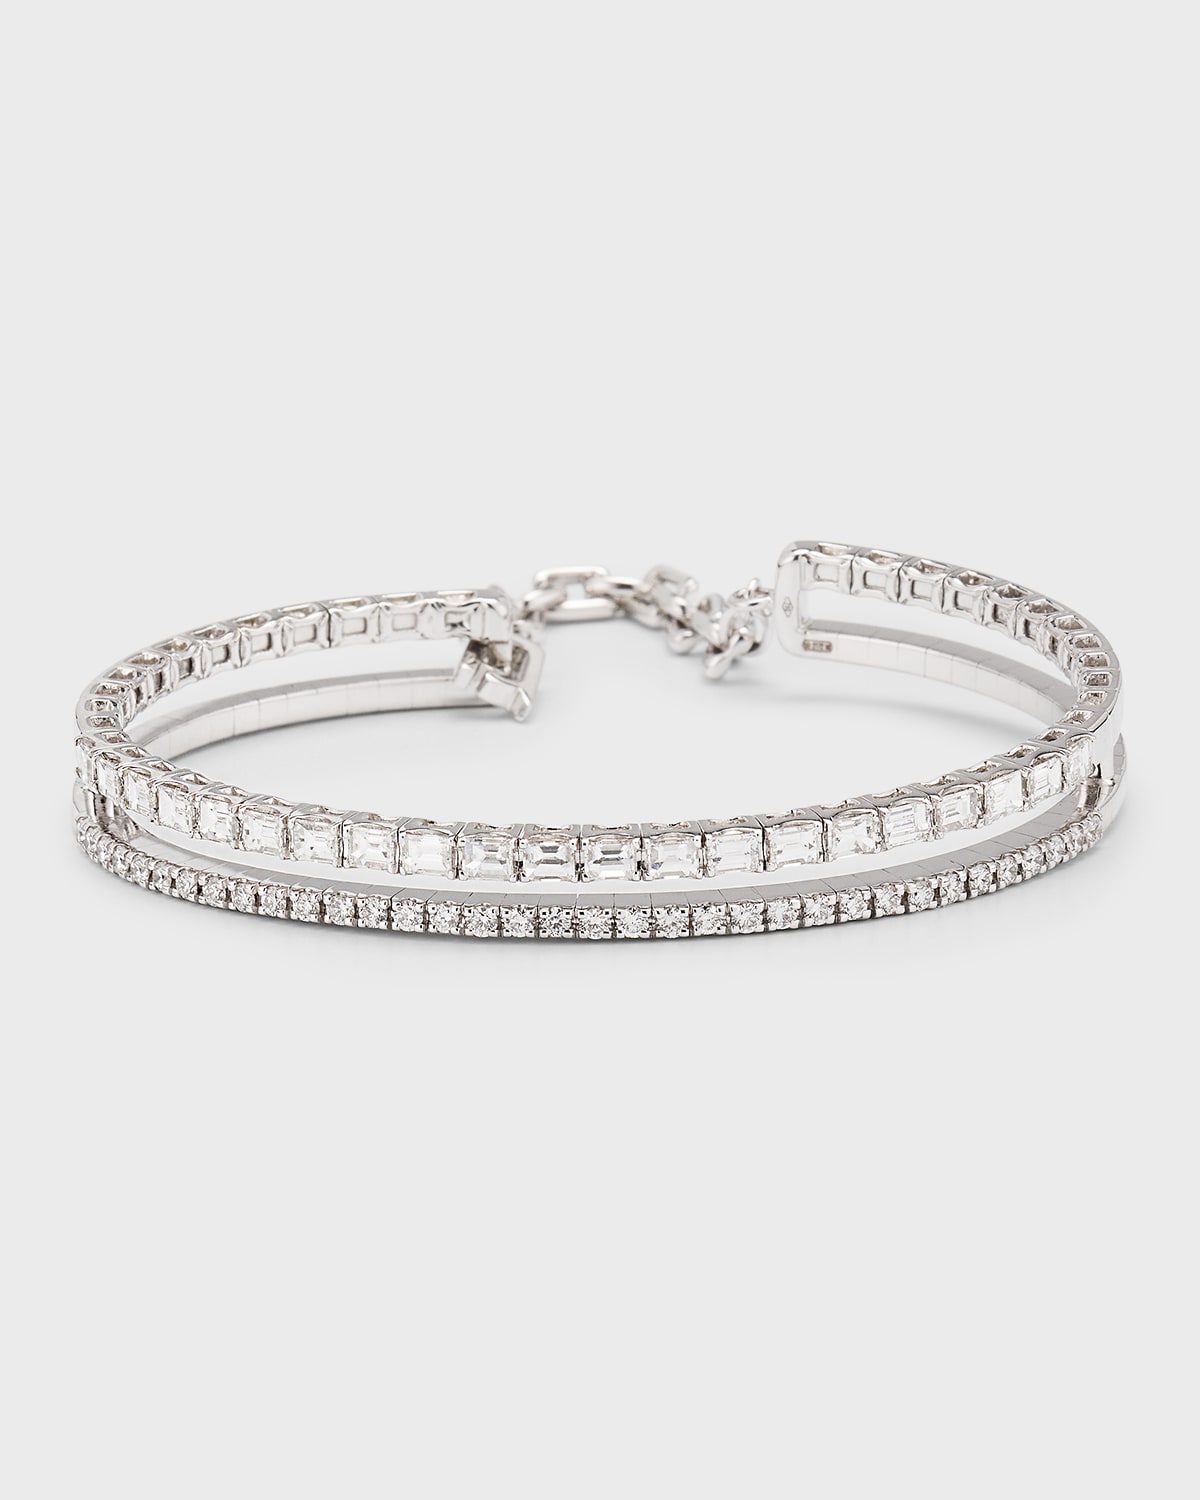 Zydo 18k White Gold Rigid Bracelet With Diamonds In Metallic